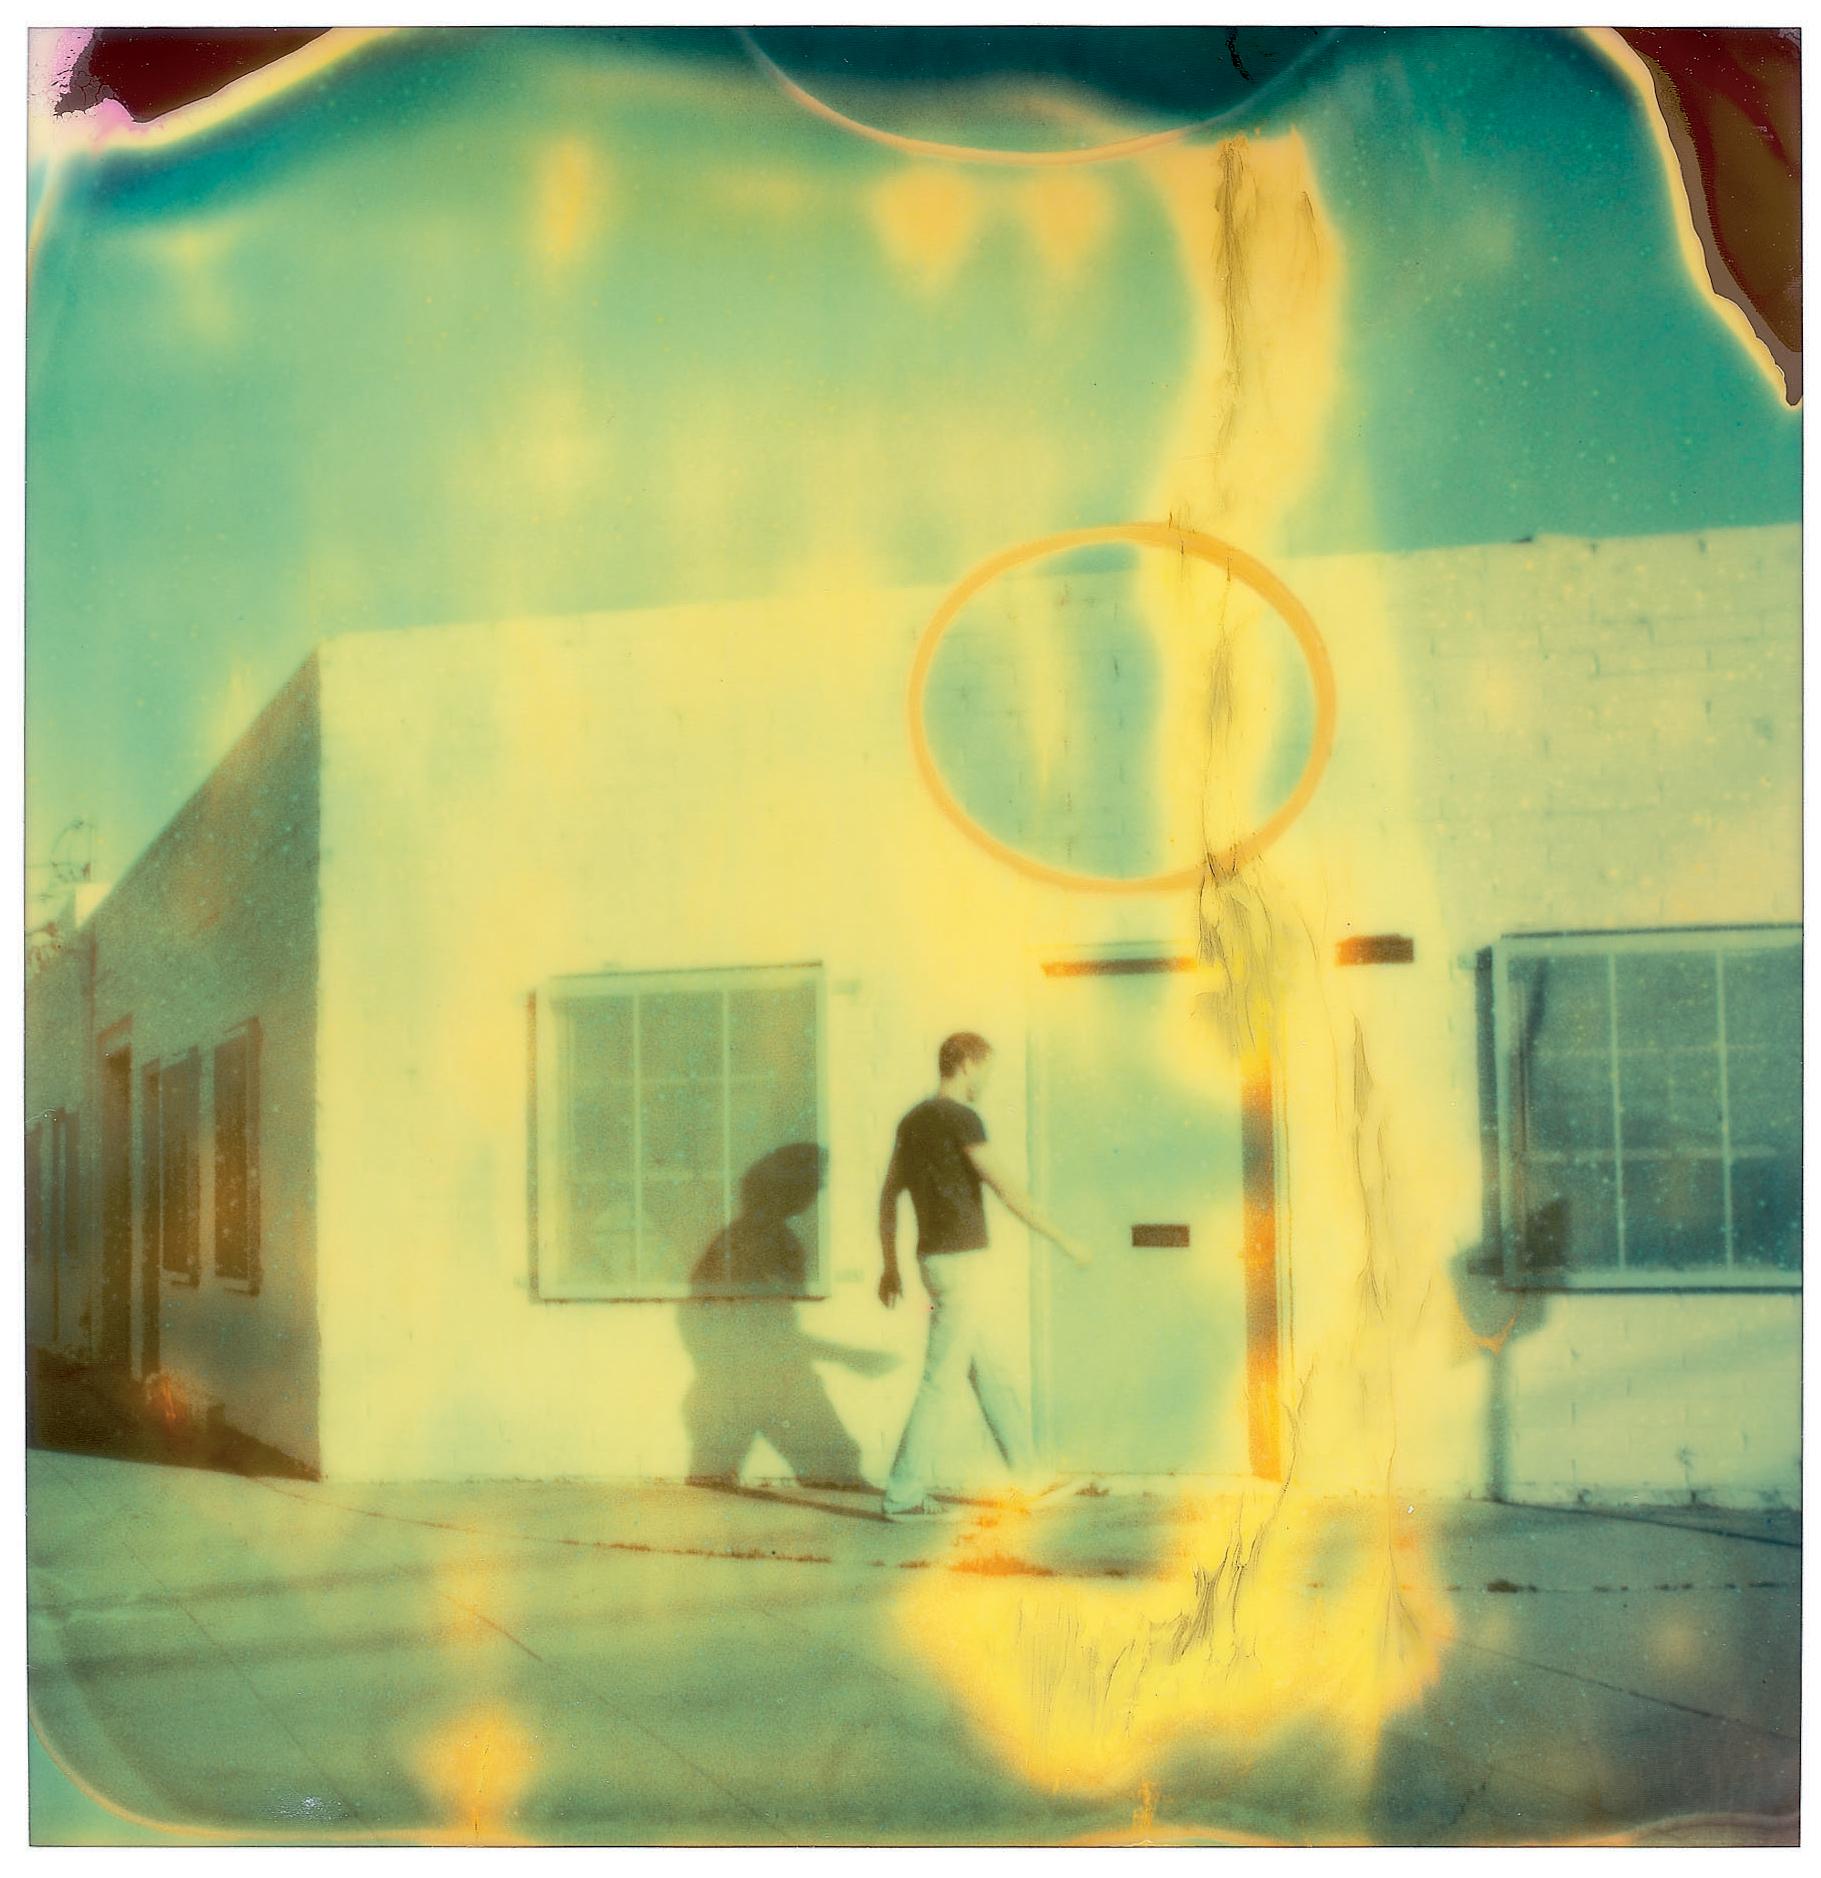 Streetcorner (Stranger than Paradise) - Triptychon,  2003

Ausgabe 6/10, 
57x56cm pro Stück, 57x185cm installiert mit 5cm Zwischenraum. 
3 analoge C-Prints, vom Künstler handgedruckt auf Fuji Crystal Archive Papier.
basierend auf den 3